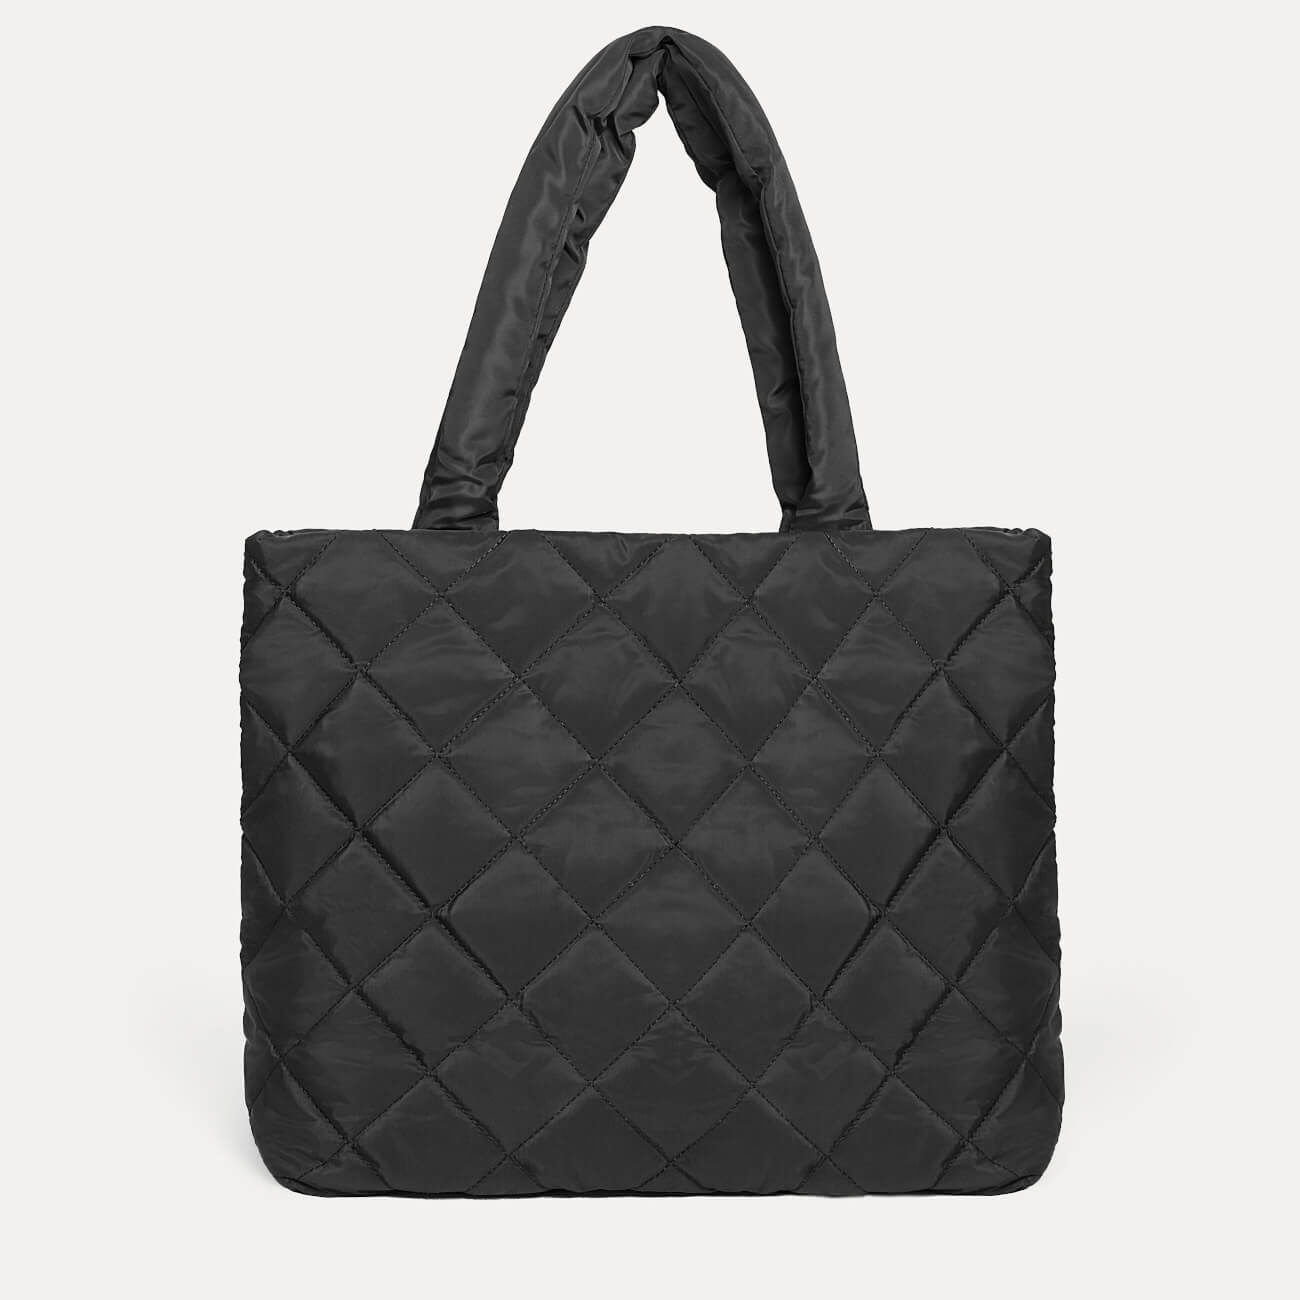 сумка для ноутбука rivacase 8325 14 полиэстер черная Сумка женская, 45х37 см, стеганая, полиэстер, черная, One stitch